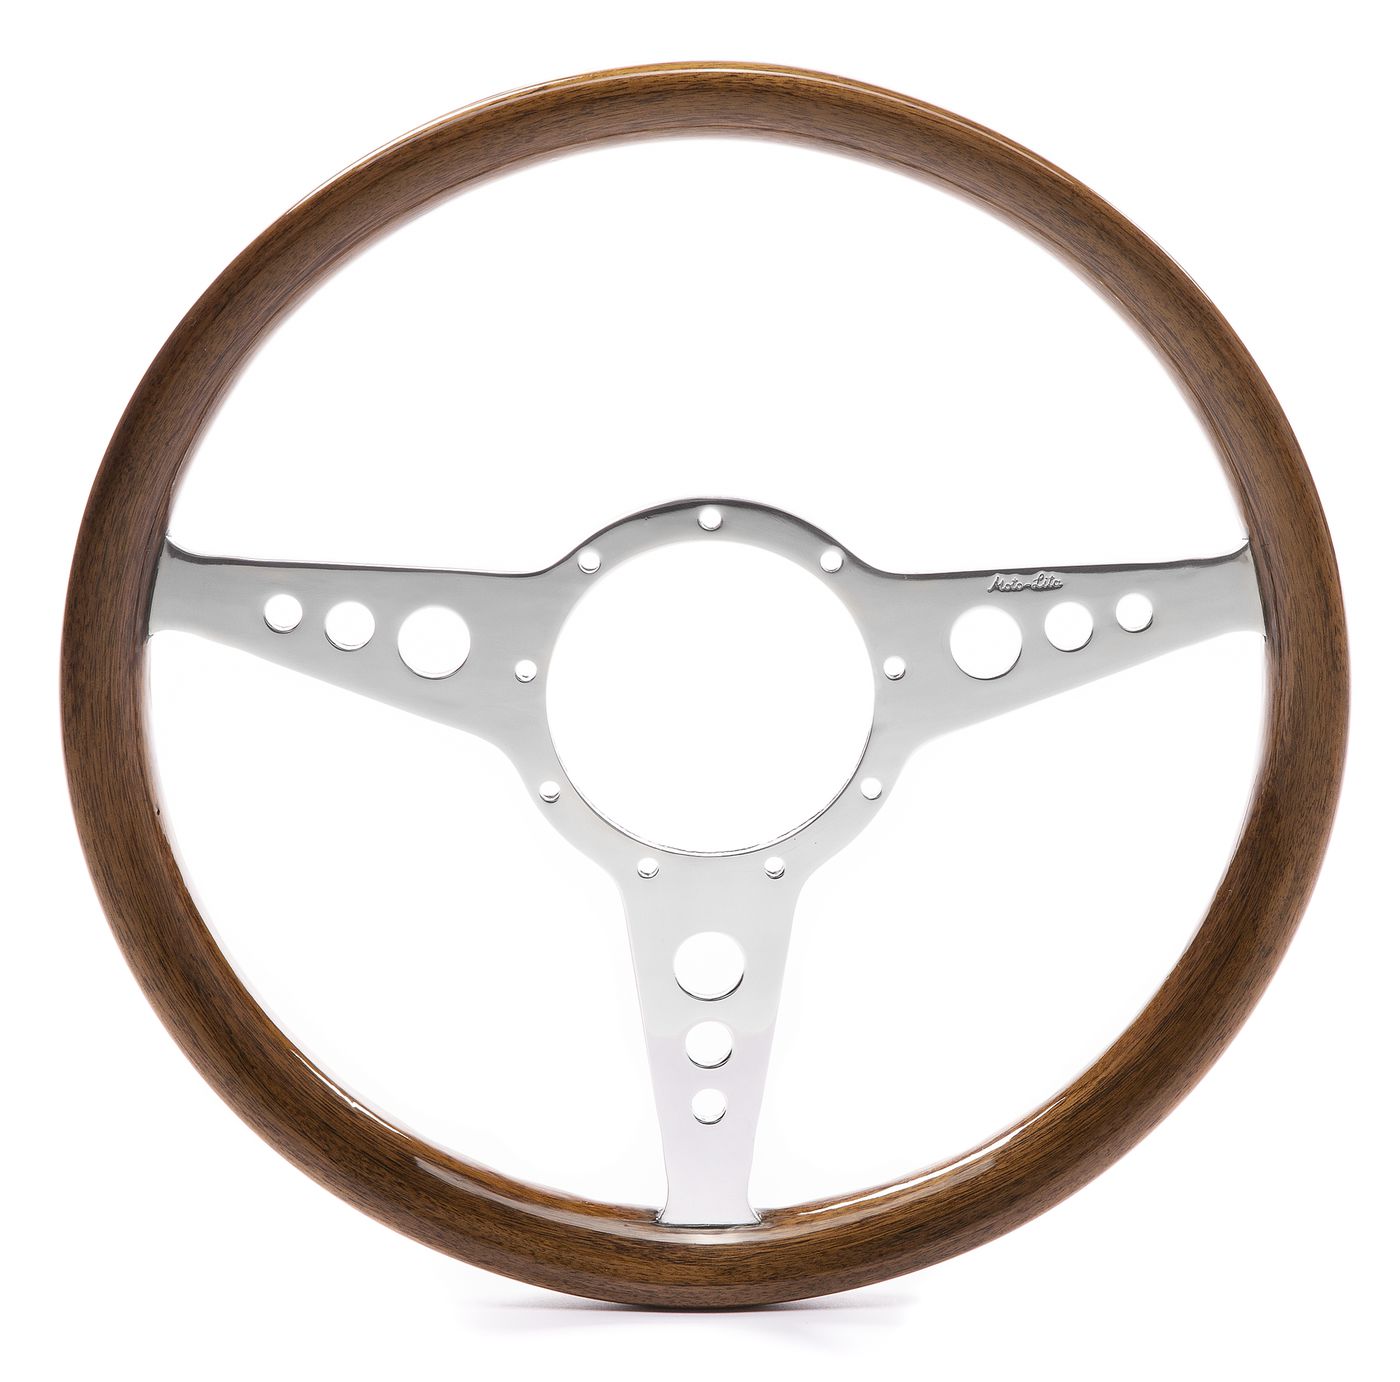 Holzlenkrad
Woodrim steering wheel
Volant en bois
Kierownica dre